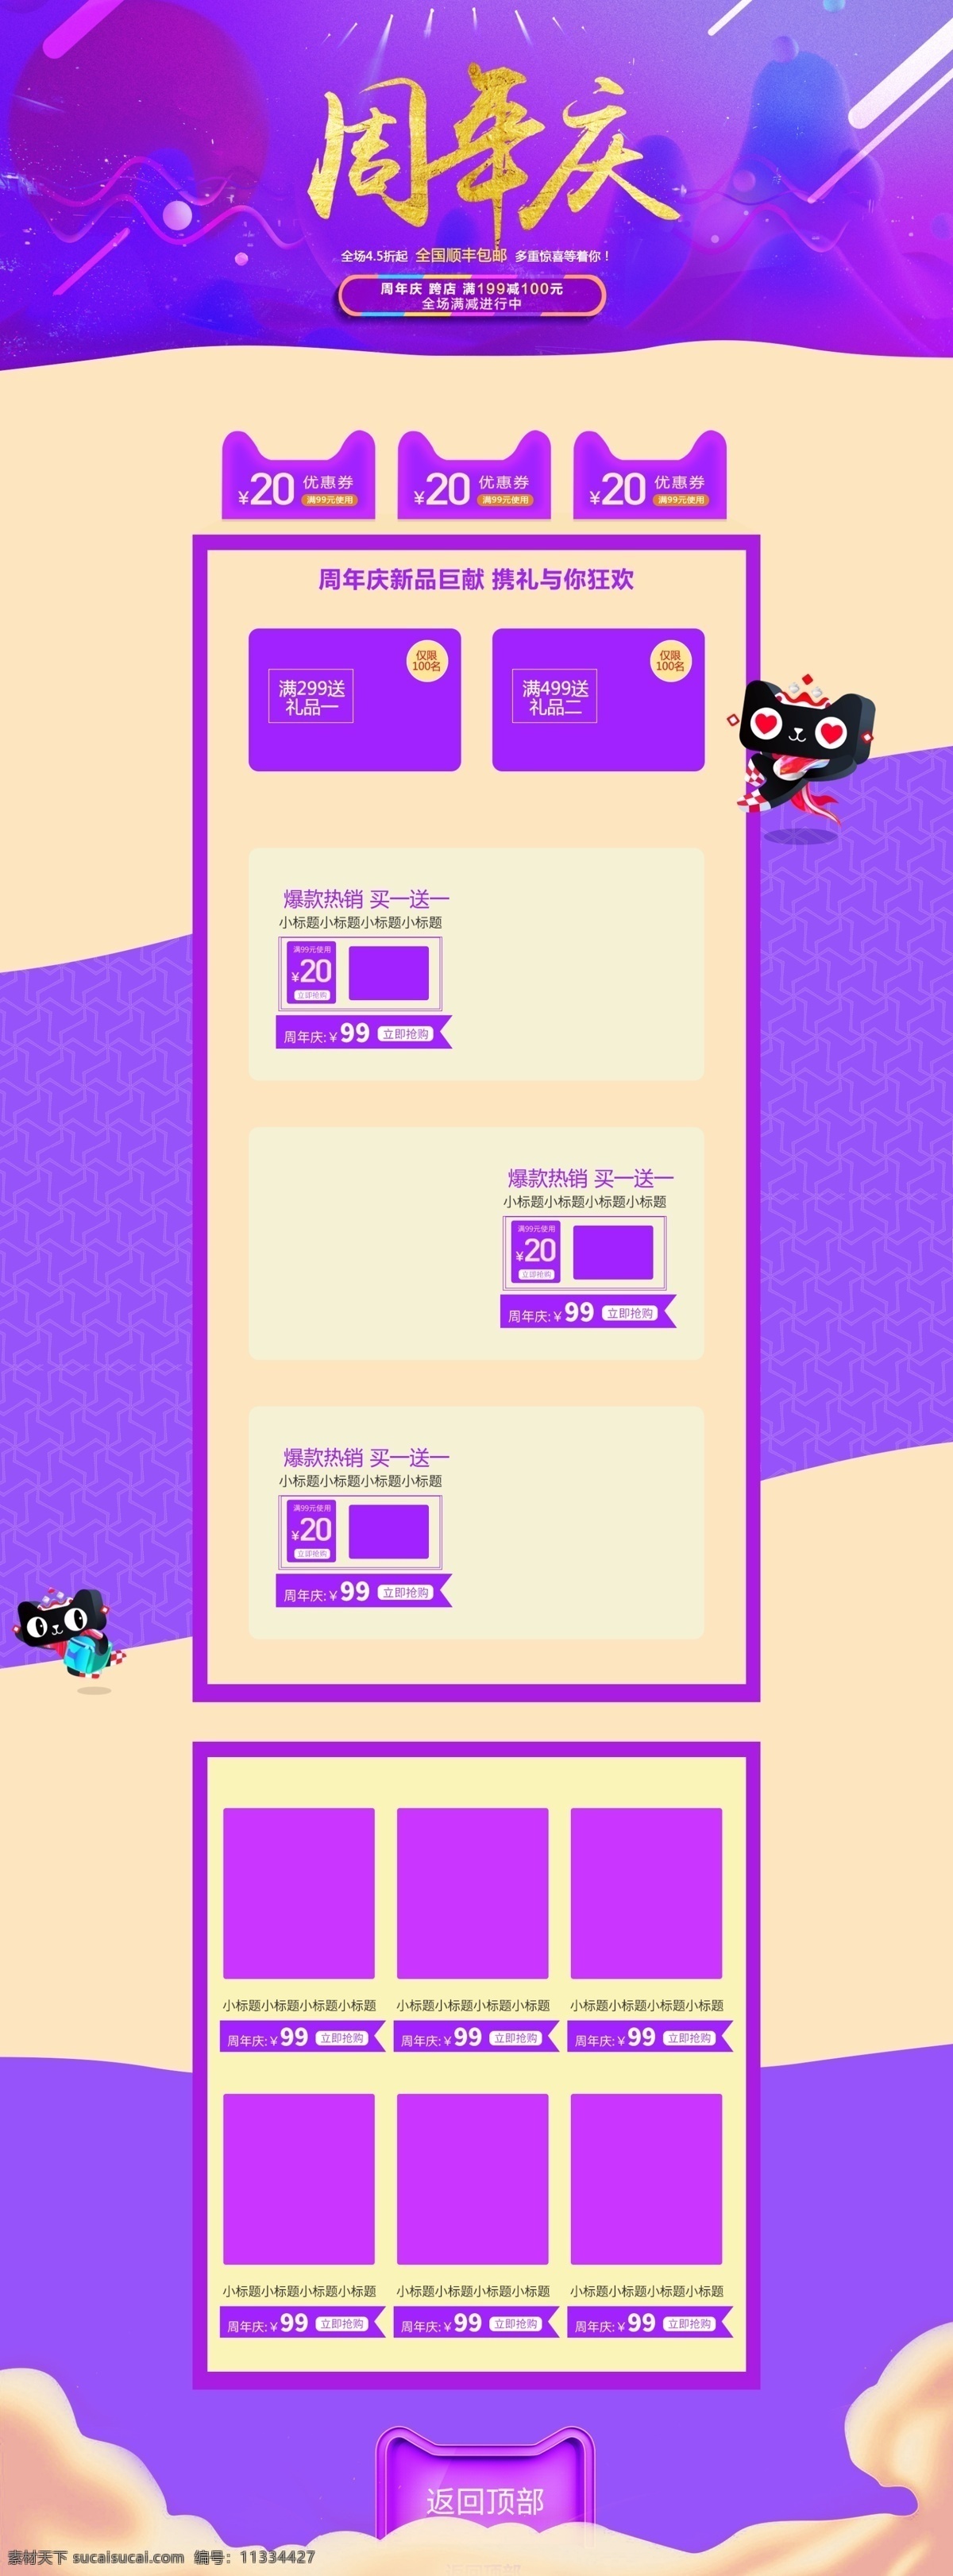 天猫 紫色 大气 周年庆 首页 模板 产品排版 电商通用 首页设计 天猫元素 优惠券 源文件